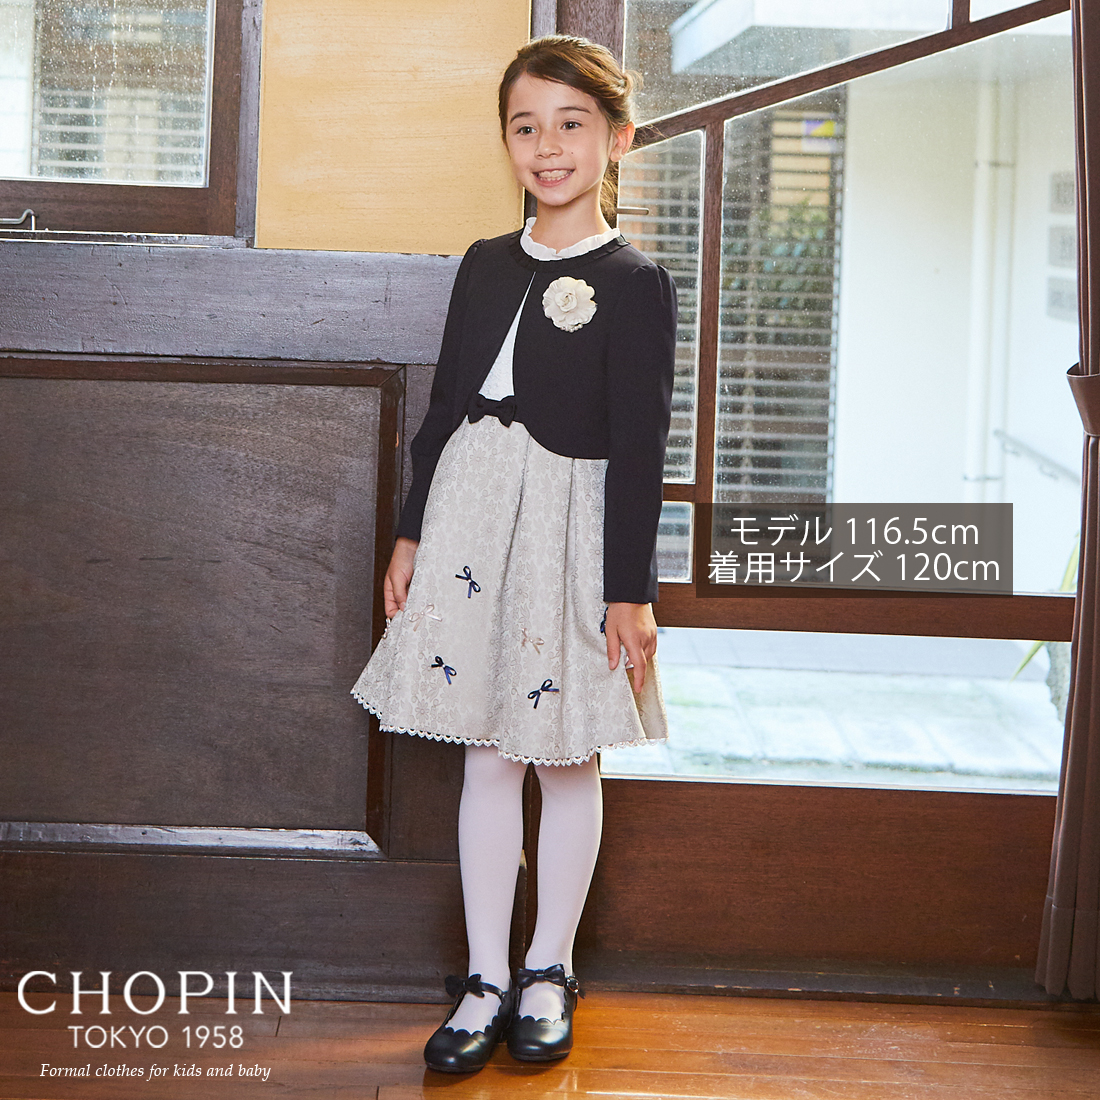 大特価特価 入学式 女の子 フォーマル CHOPIN ショパン 130cm PS6mA